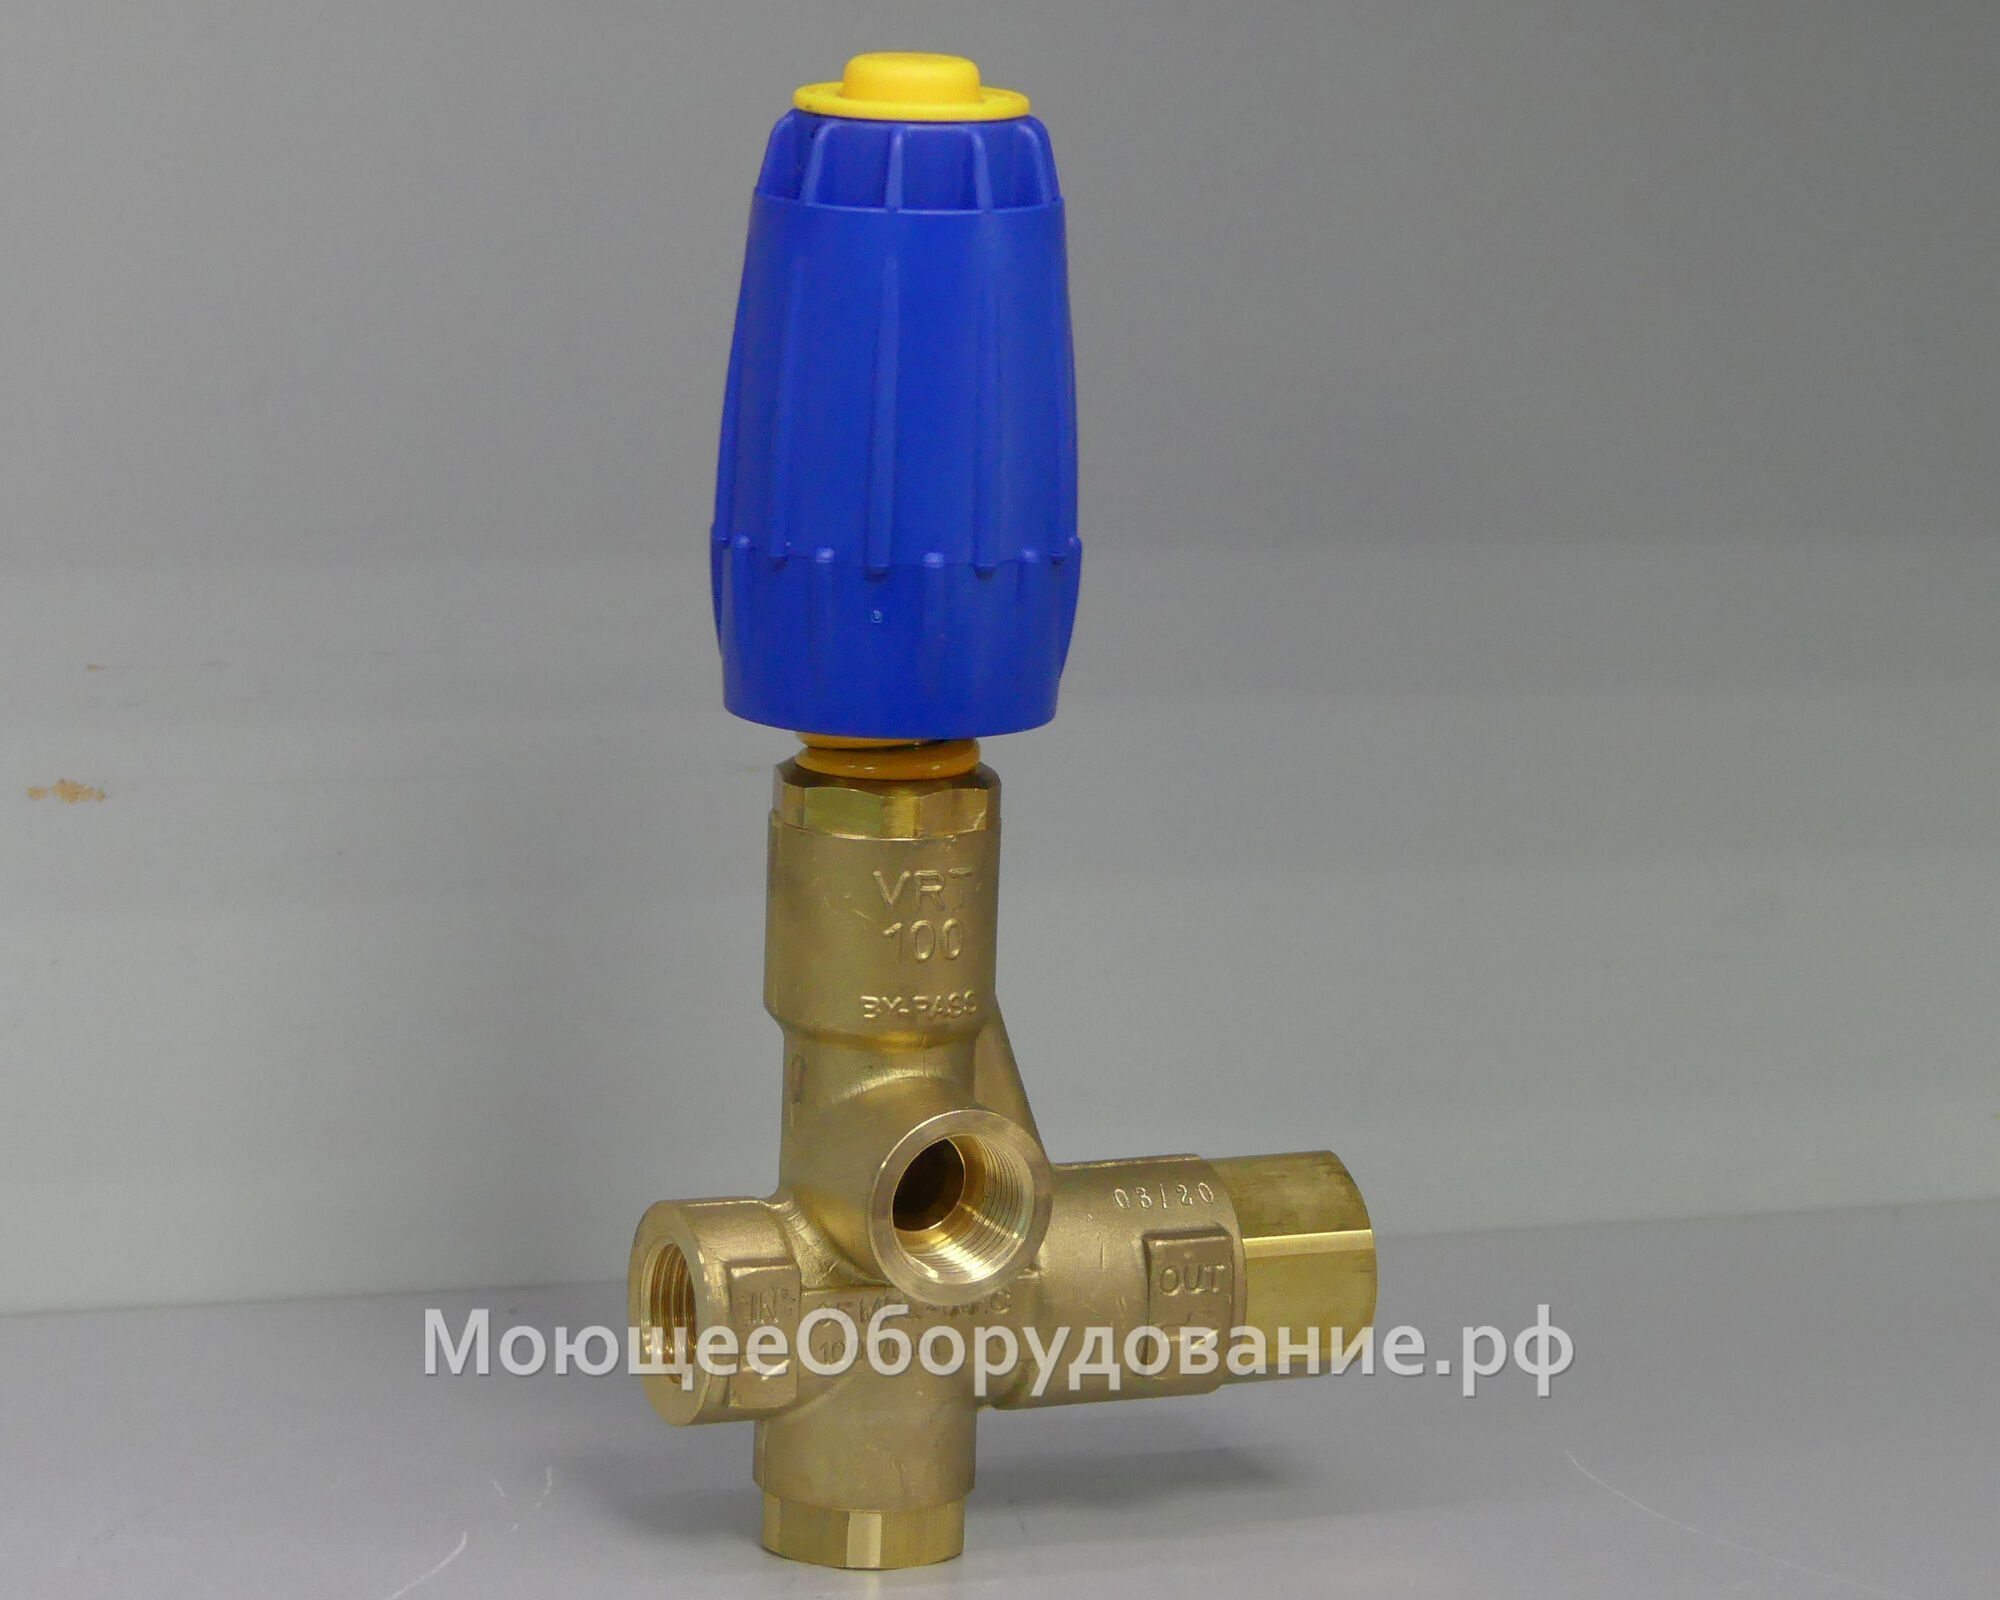 Регулятор давления для водяной помпы VRT 100 ByPass (190бар, 100л/мин)